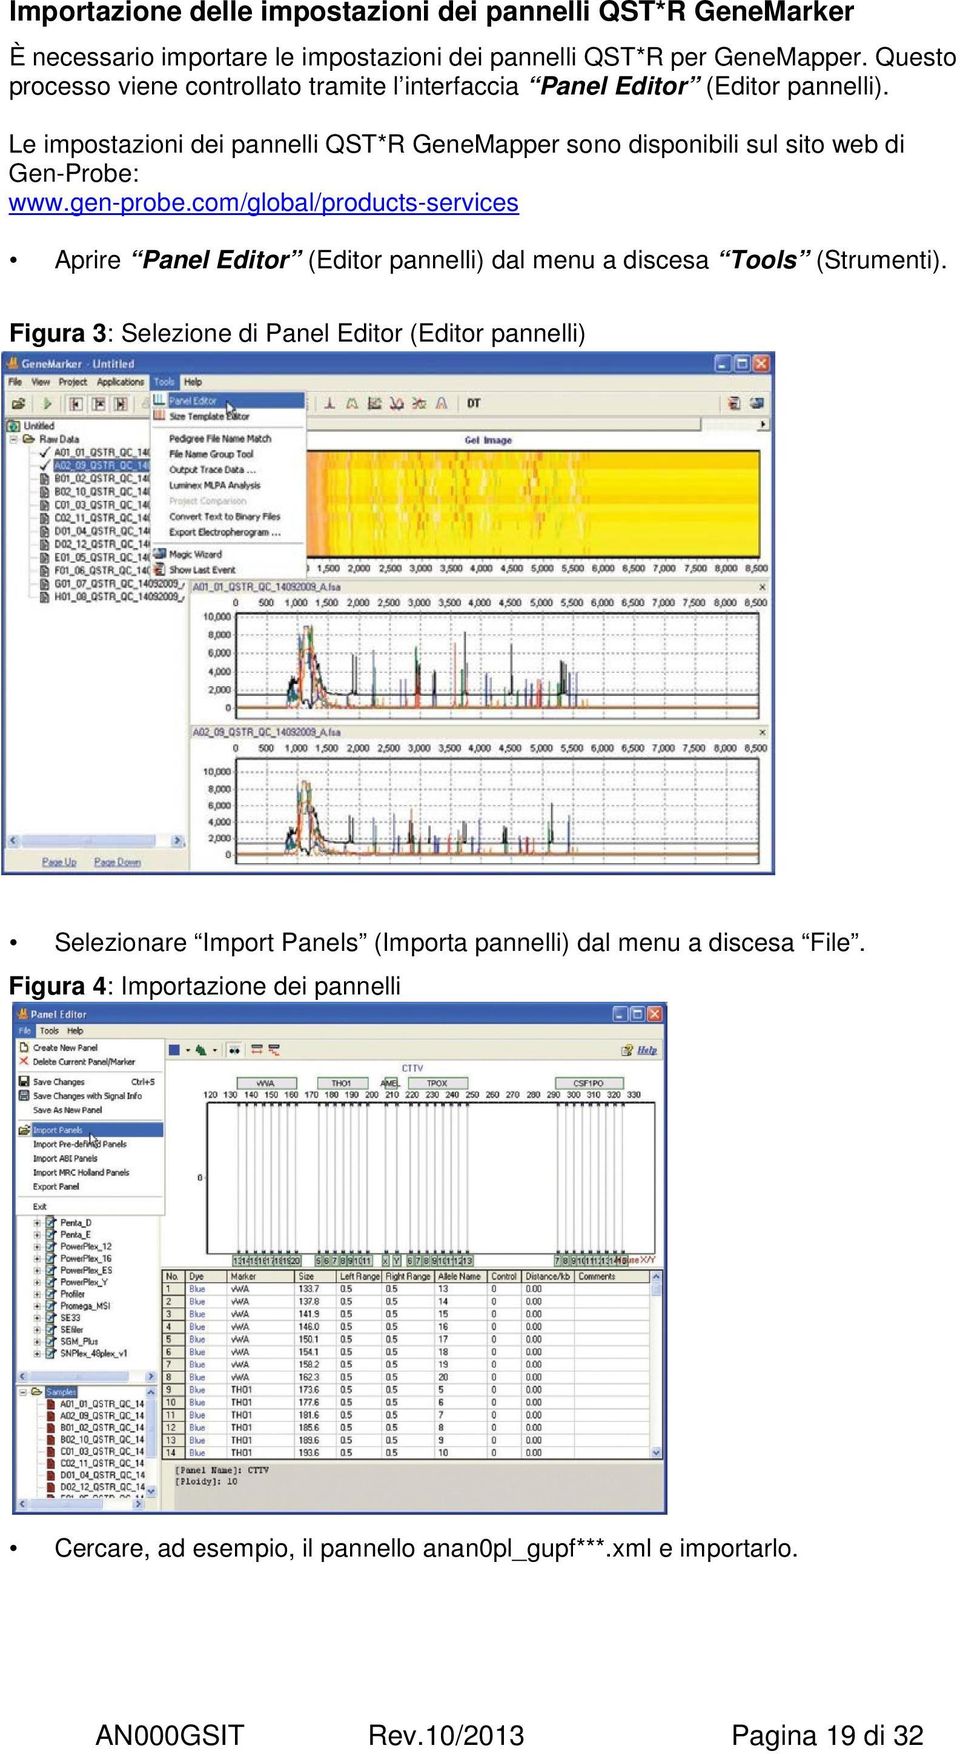 Le impostazioni dei pannelli QST*R GeneMapper sono disponibili sul sito web di Gen-Probe: www.gen-probe.